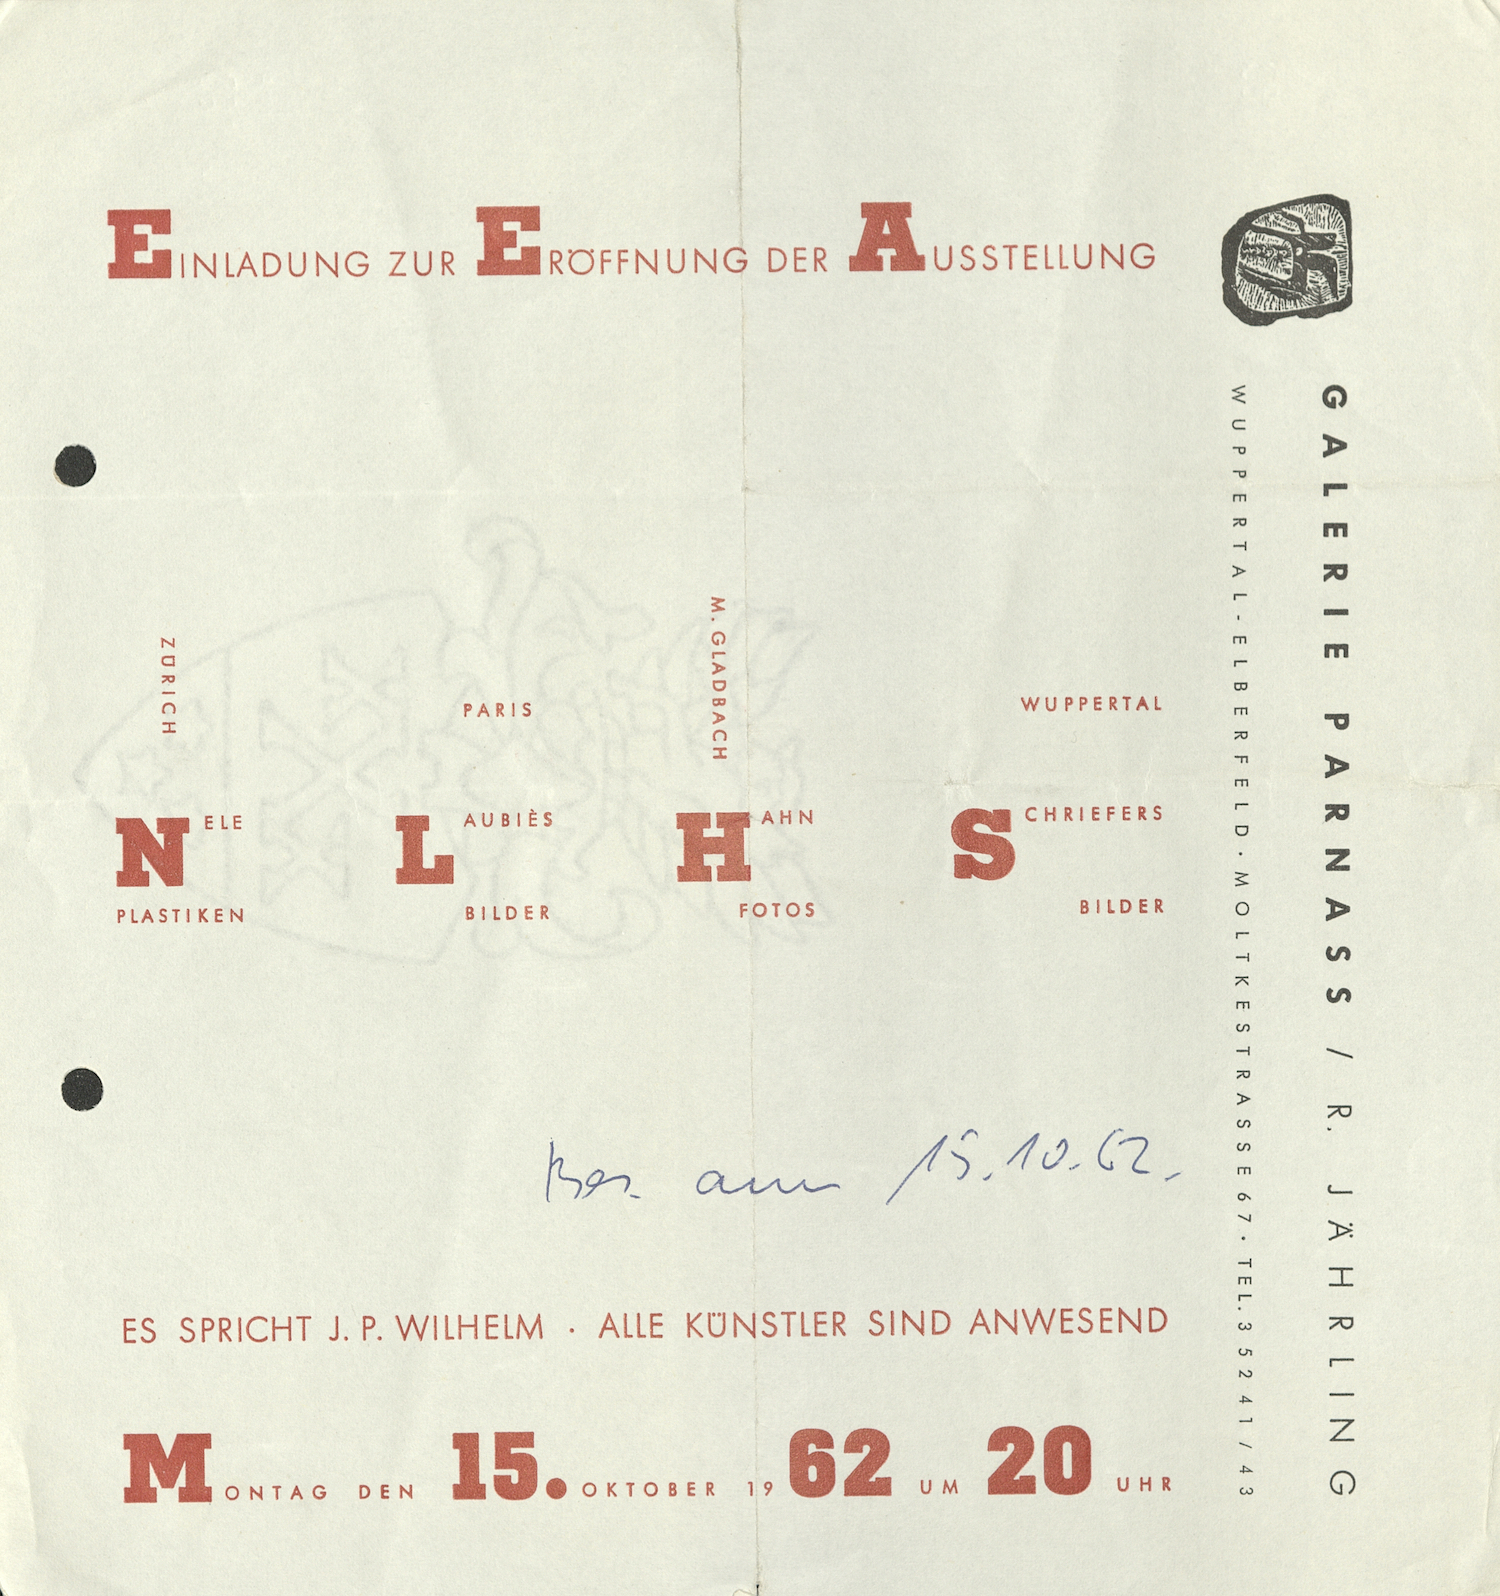 Nele, Laubiès, Hahn, Schriefers, Galerie Parnass, Wuppertal 1962 (Invitation); Archiv der Avantgarden, Staatliche Kunstsammlungen Dresden